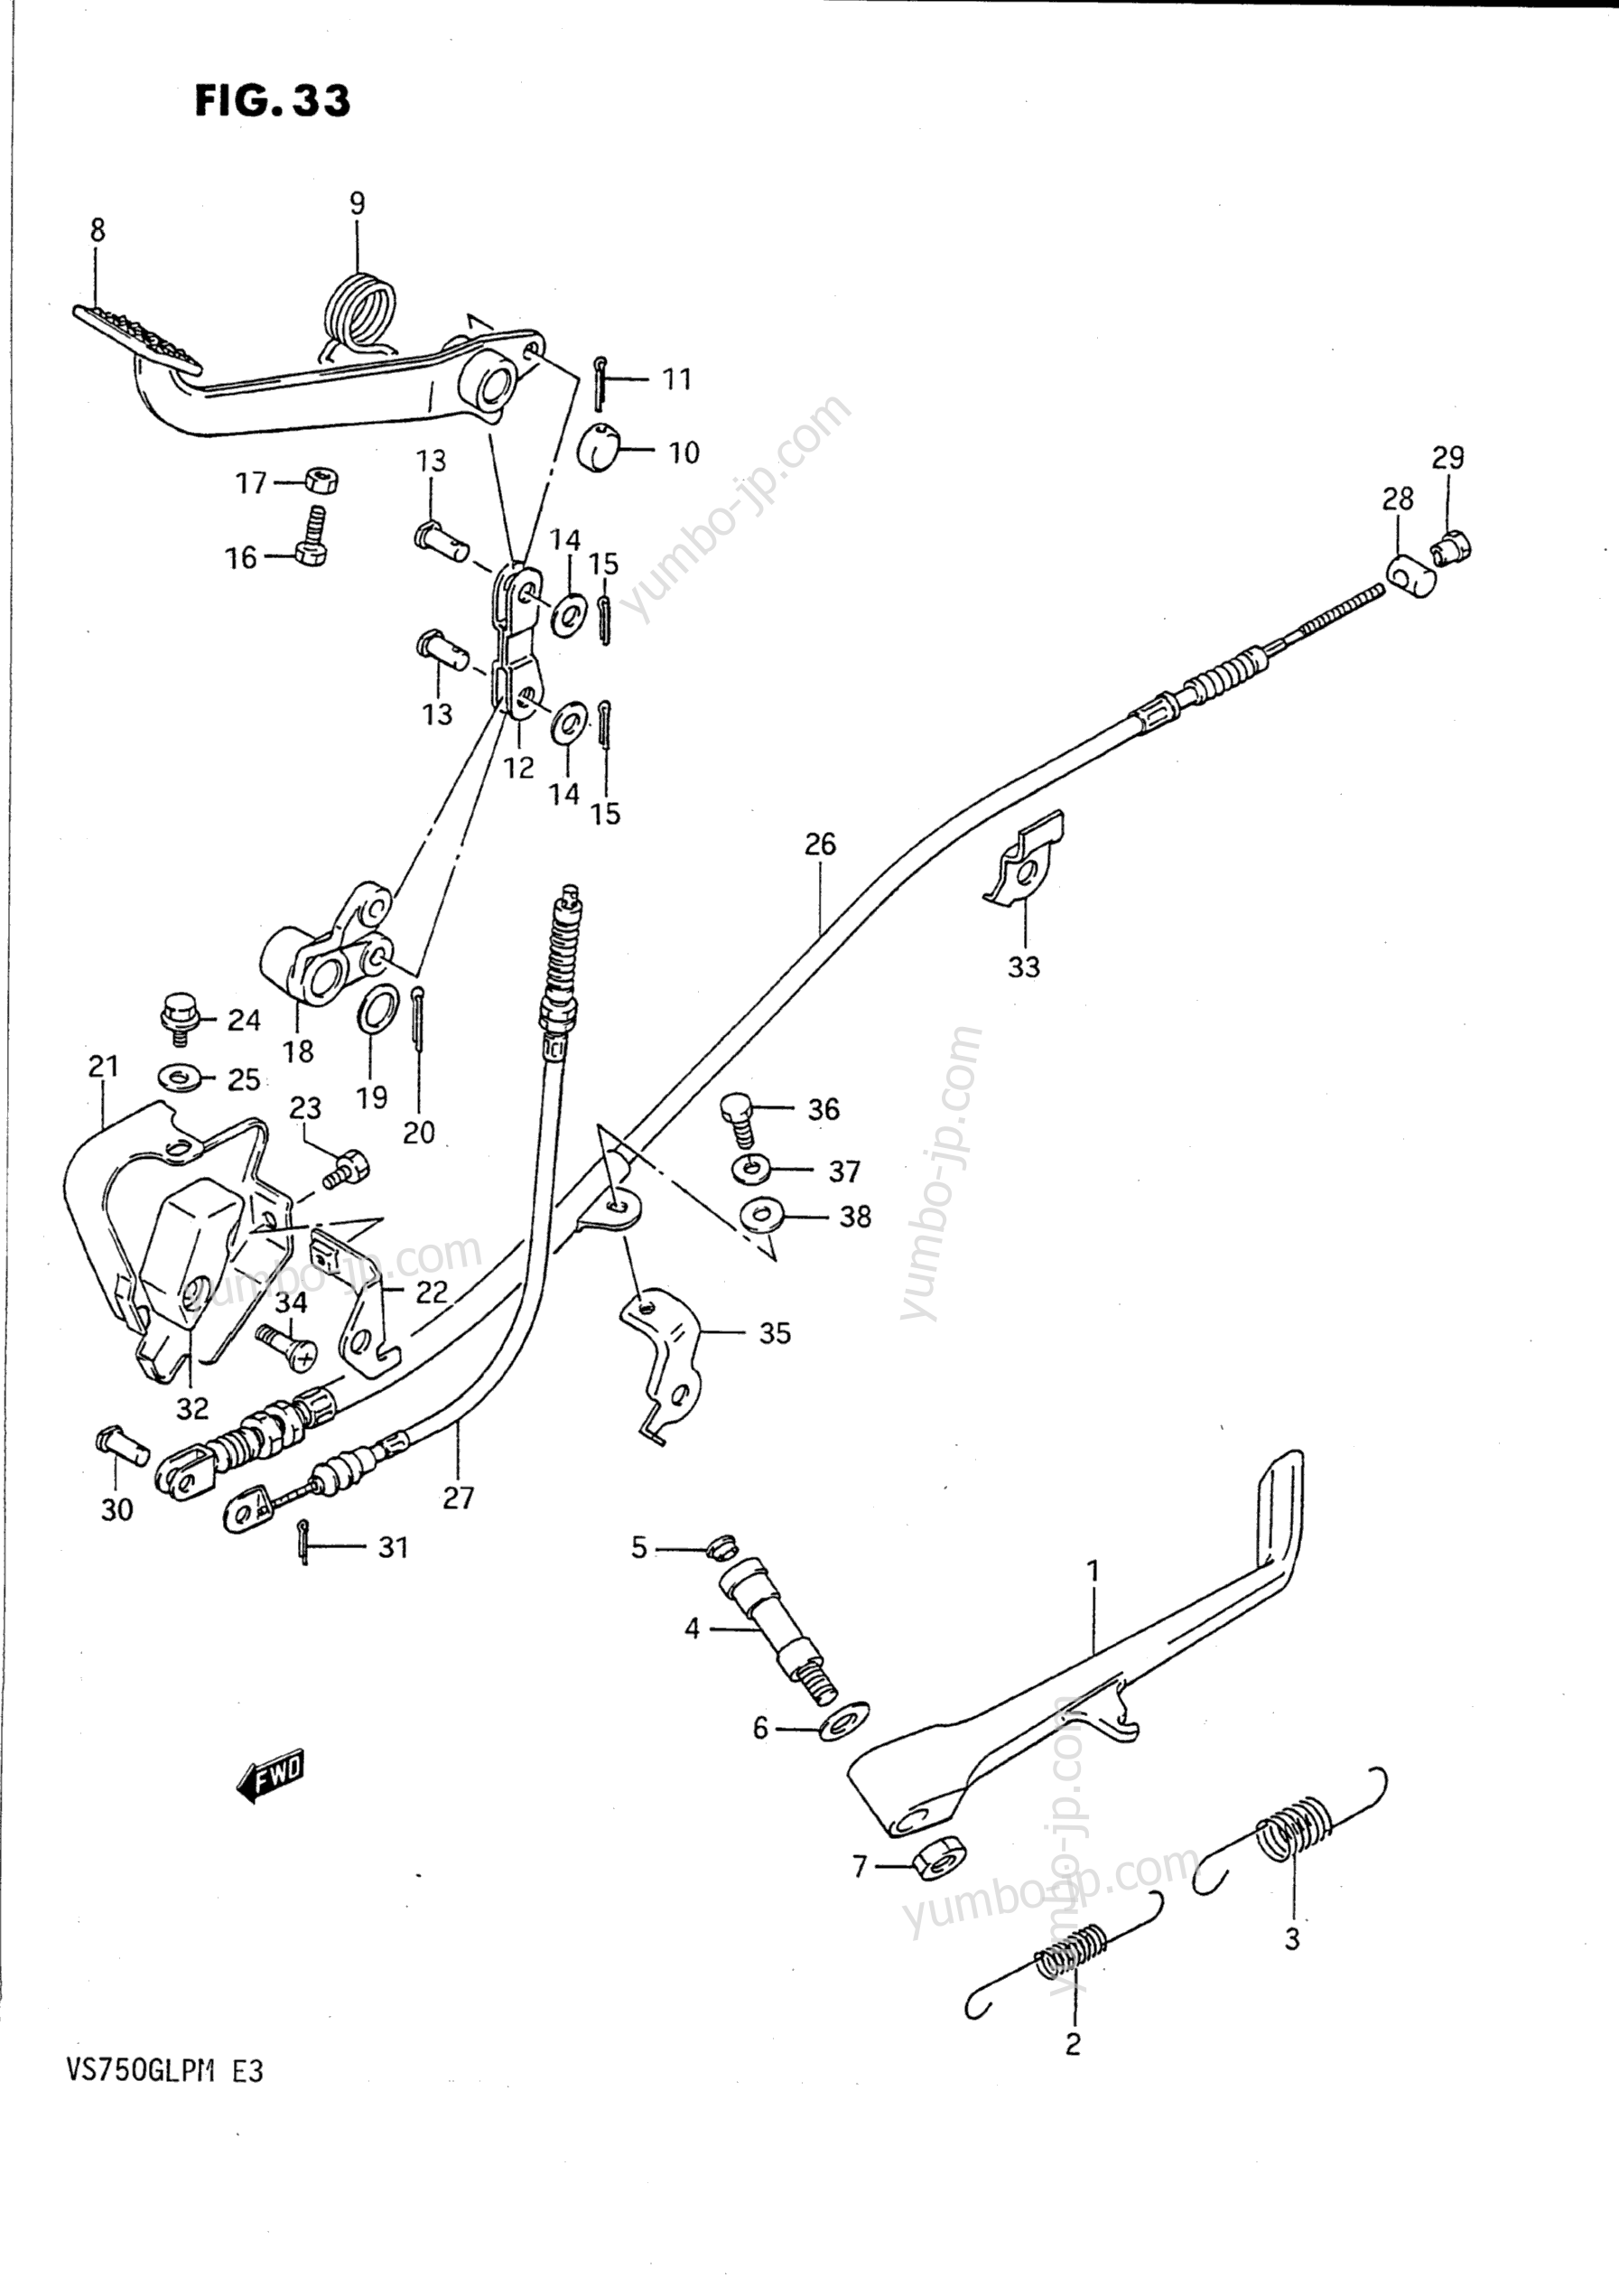 PROP STAND - REAR BRAKE for motorcycles SUZUKI Intruder (VS750GLP) 1990 year